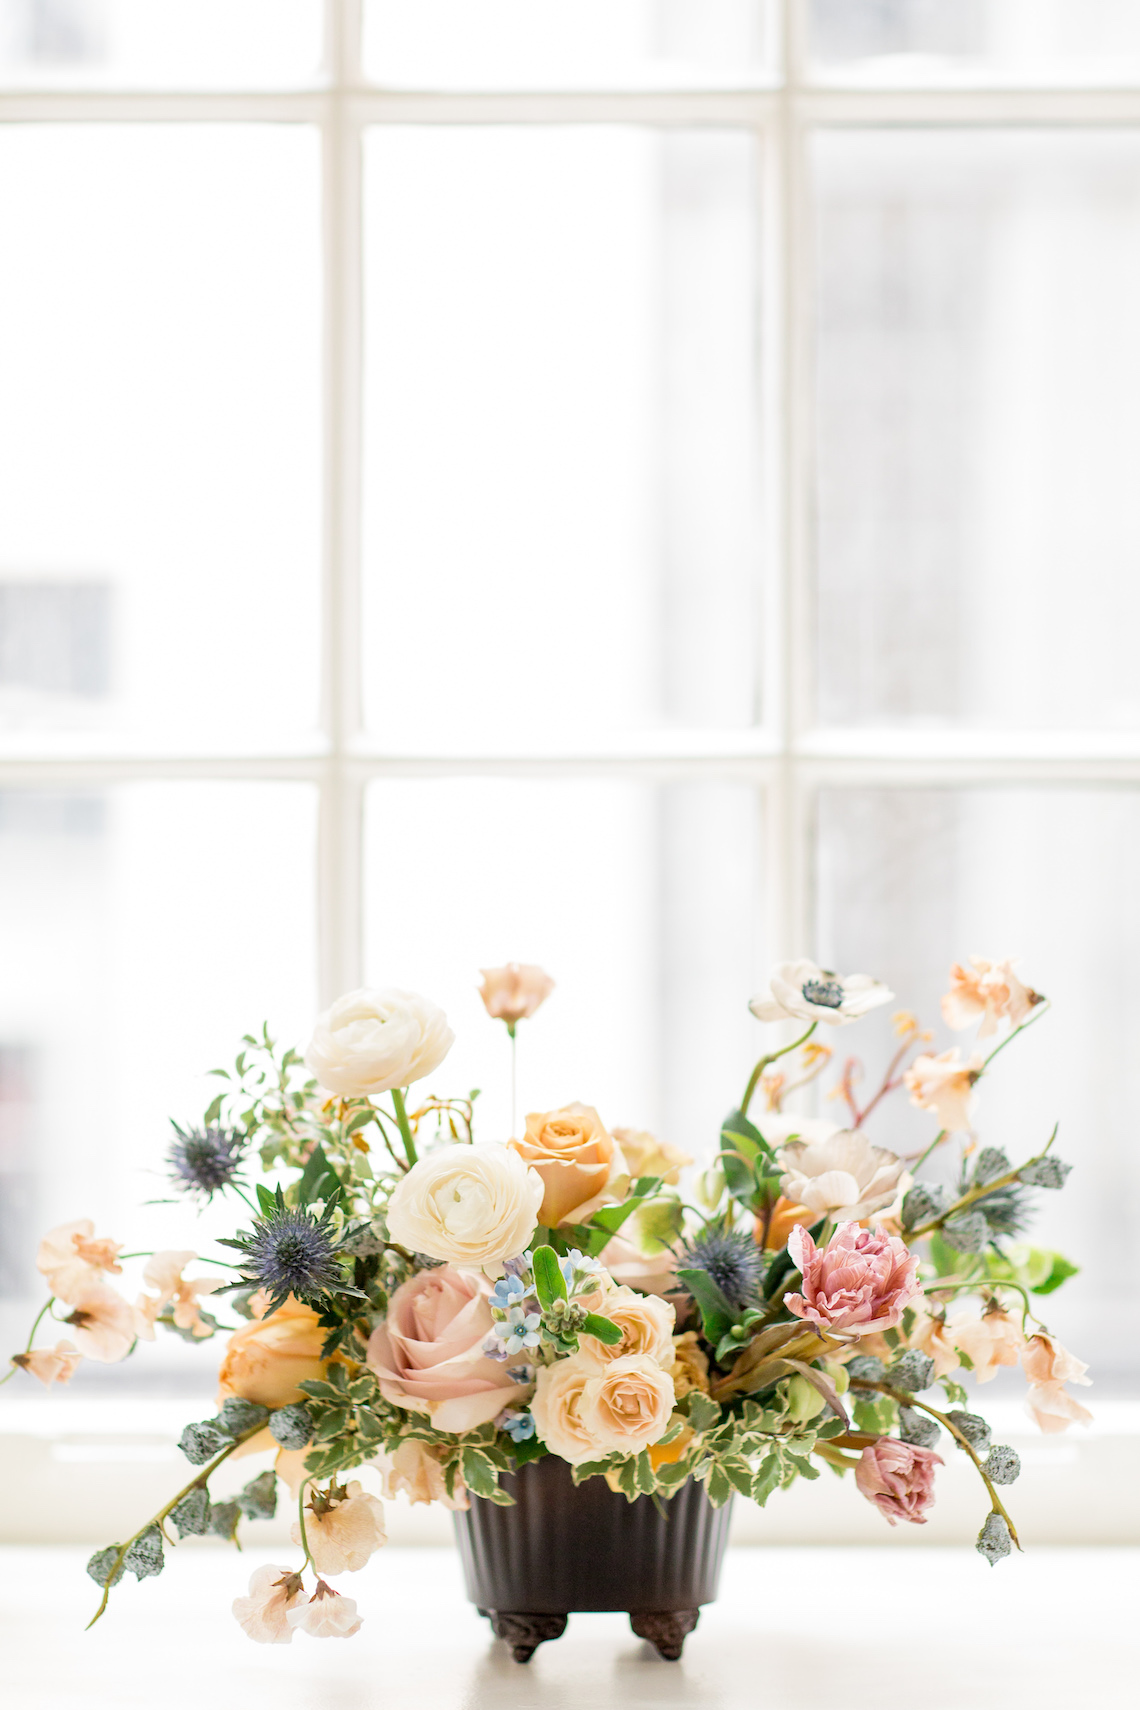 Inspiración de la boda del interior del hotel Noelle lleno de flores - Krista Joy Photography - Reflexiones nupciales 1